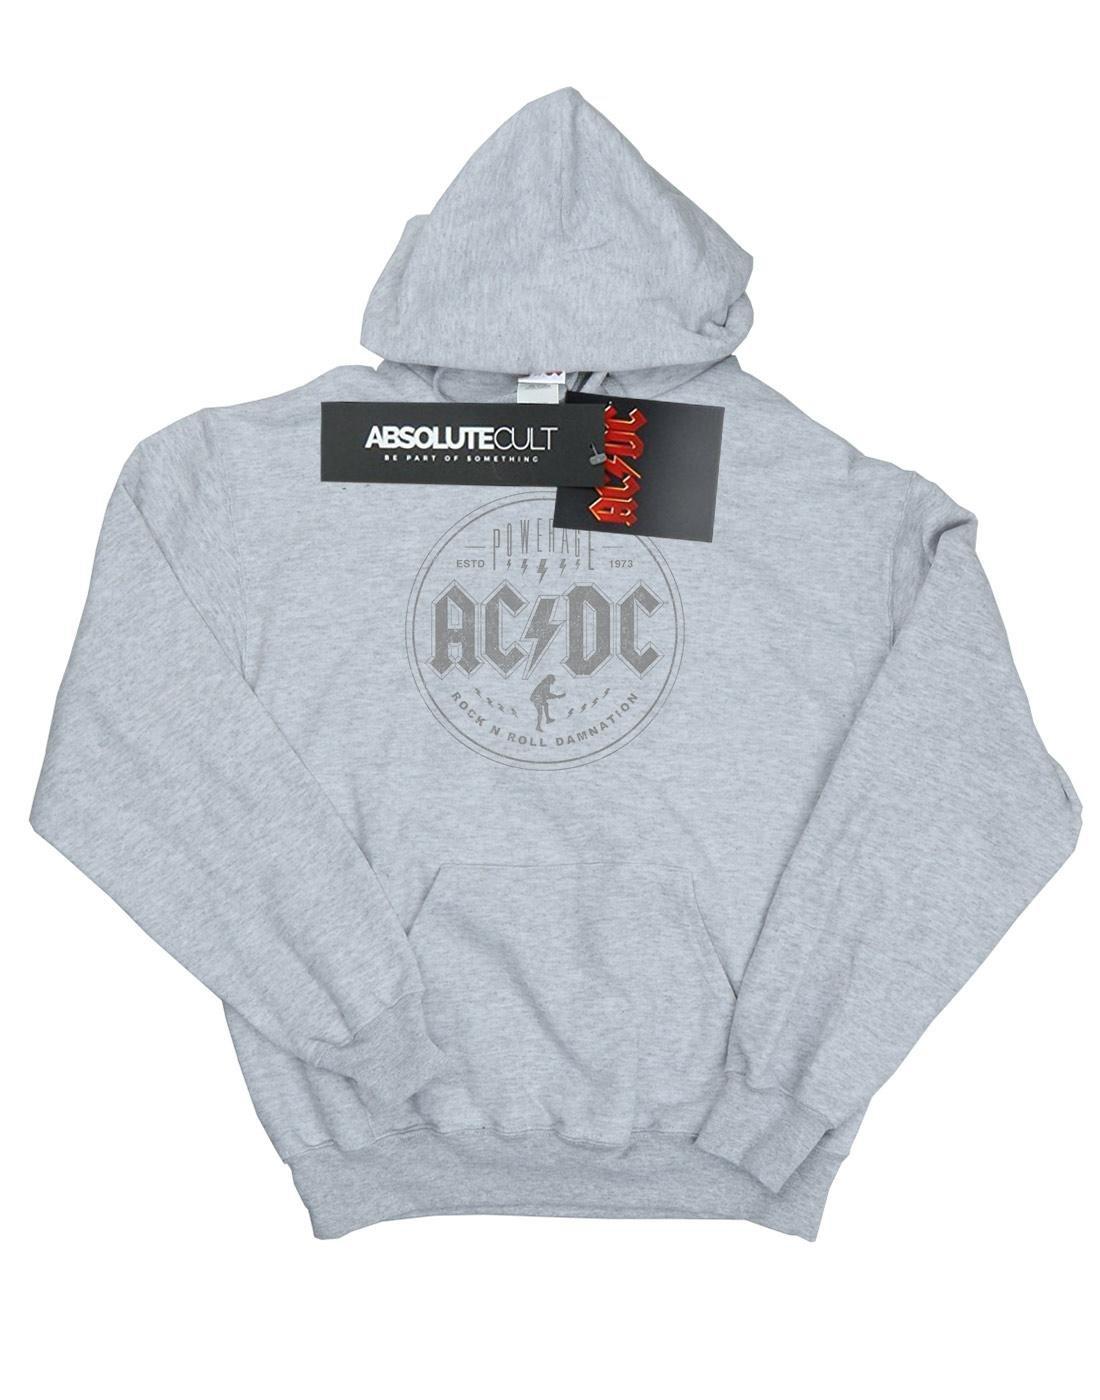 Acdc Rock N Roll Damnation Black Kapuzenpullover Jungen Grau 116 von AC/DC